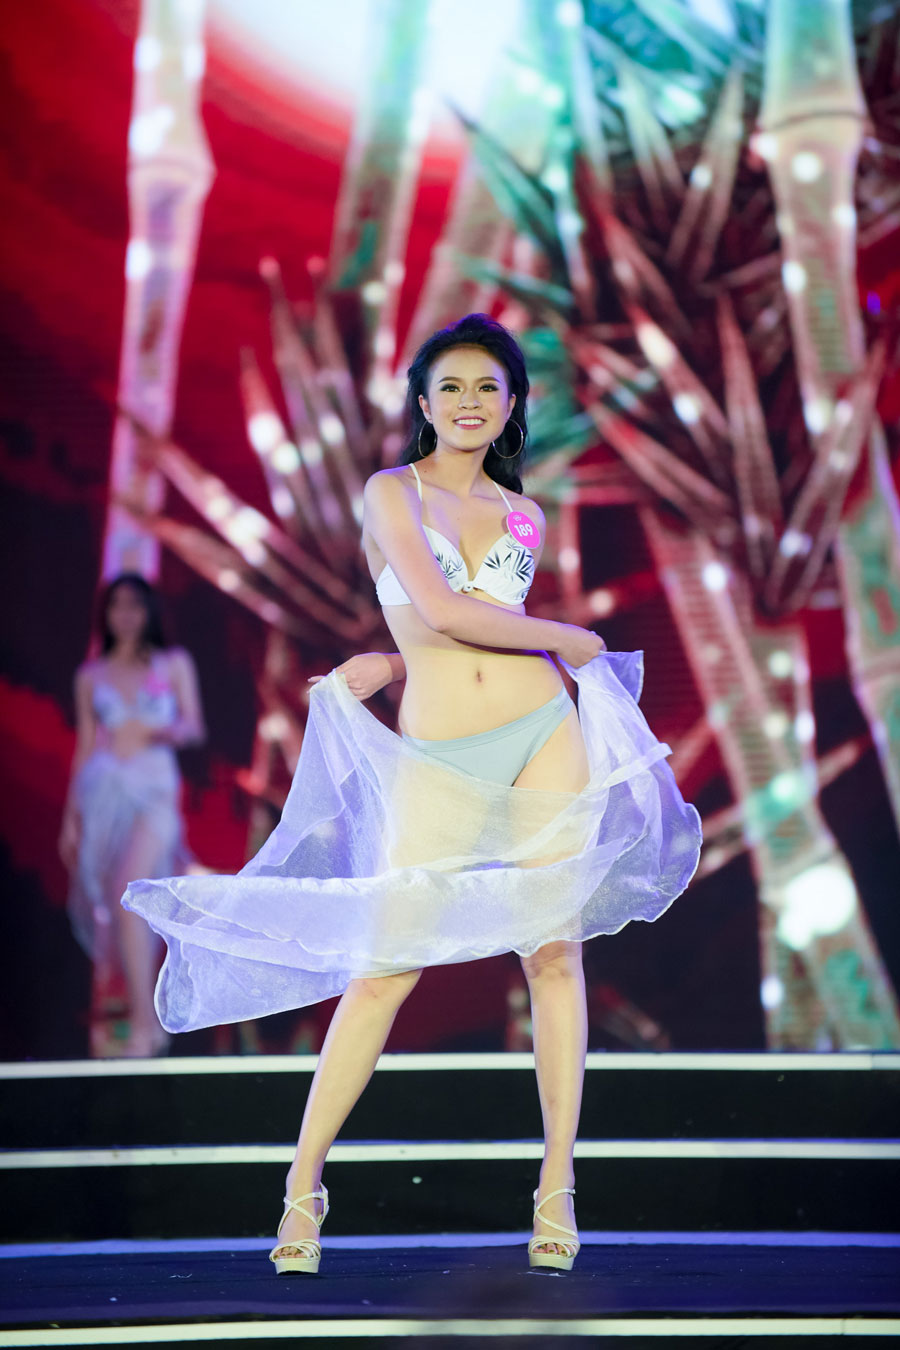 Màn trình diễn bikini bốc lửa của thí sinh Hoa hậu Việt Nam